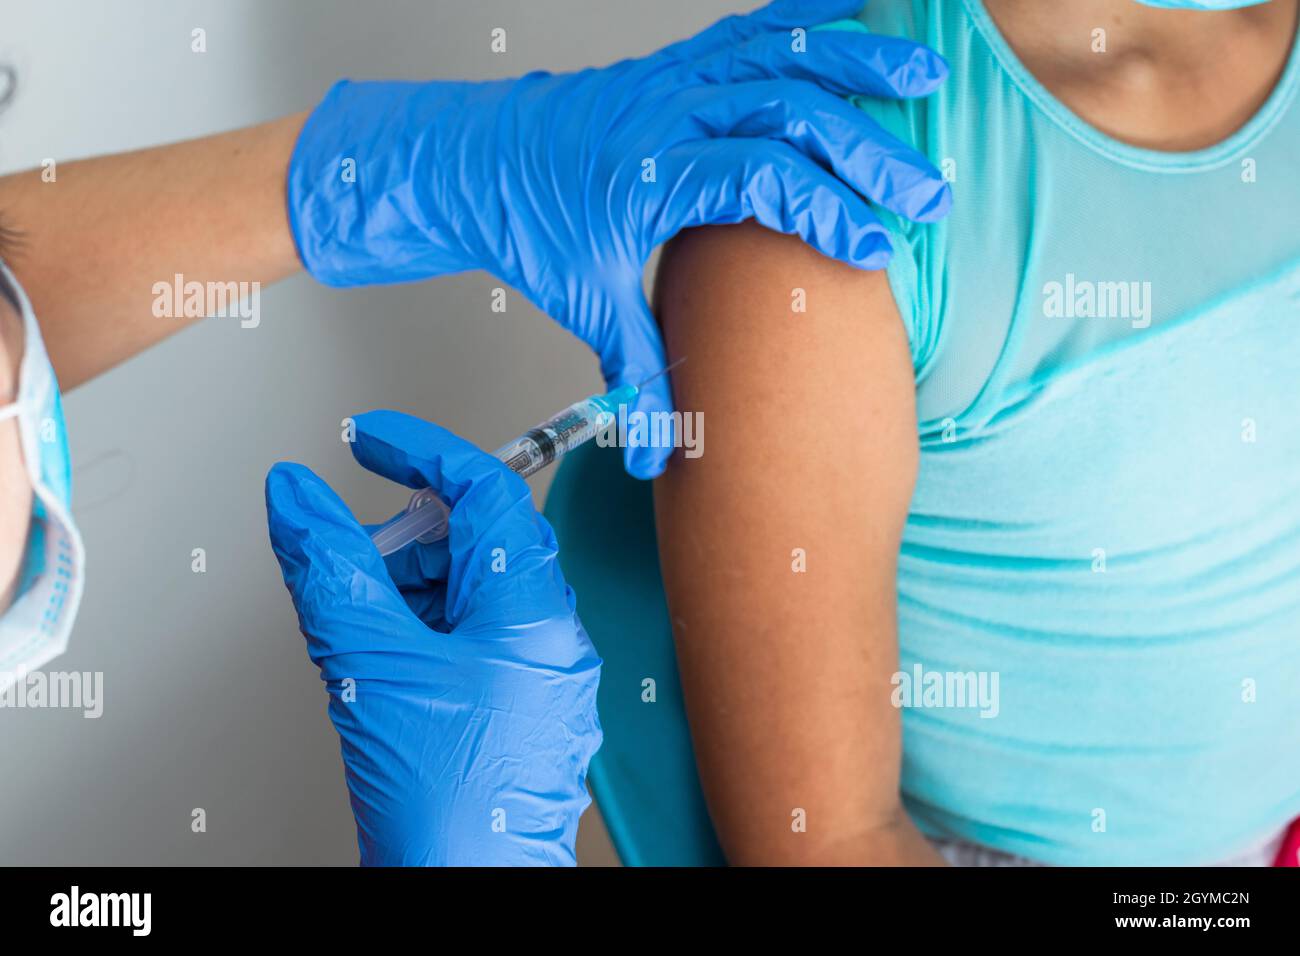 Kinderkrankenschwester Injektionsarm des braunen Mädchens. Arzt injiziert covid-19-Impfstoff. Krankenschwester entfernt Spritze vom Arm, Grippe-Impfstoff. Medizinisches Konzept, Gesundheit Stockfoto